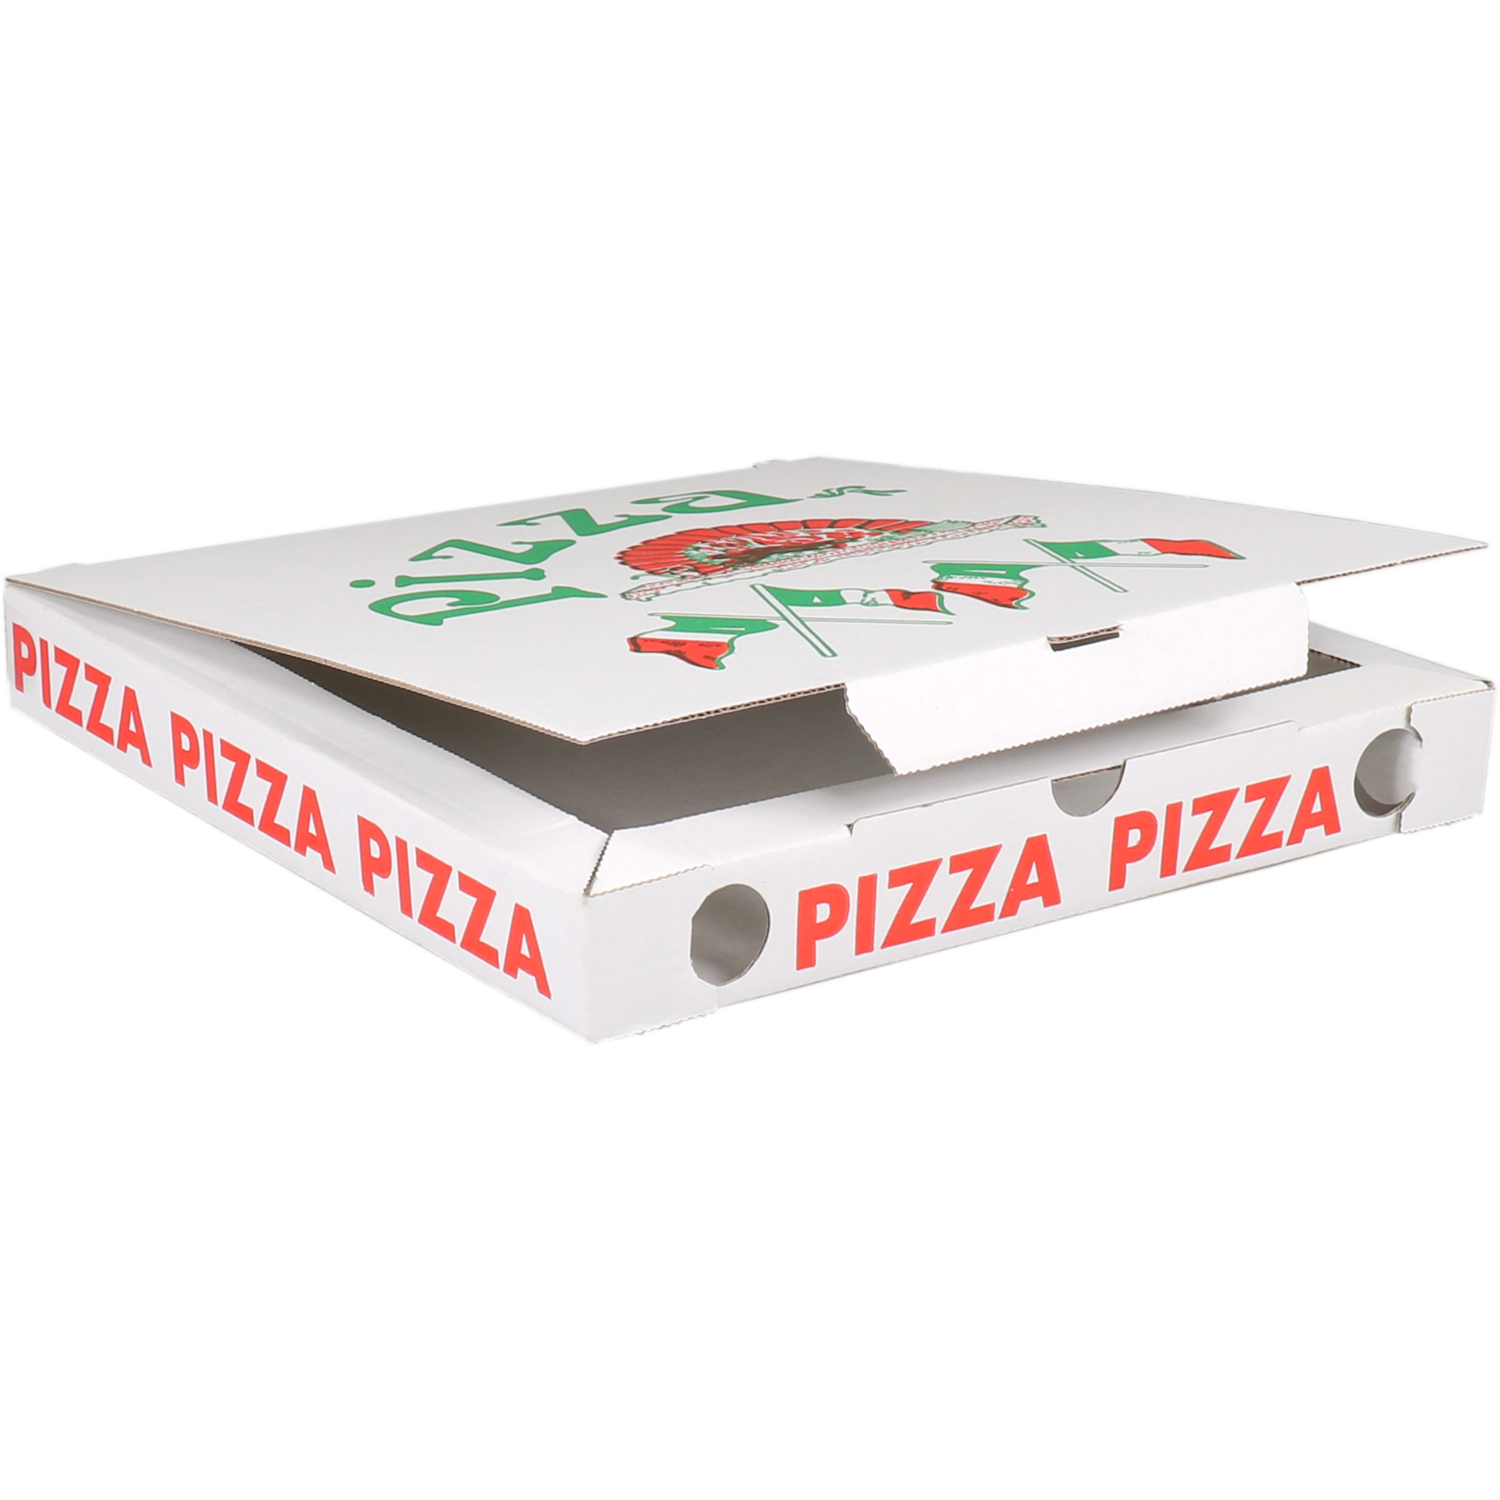  Pizzadoos, Vegetale, golfkarton, 26x26x3cm, vegetale, wit 2